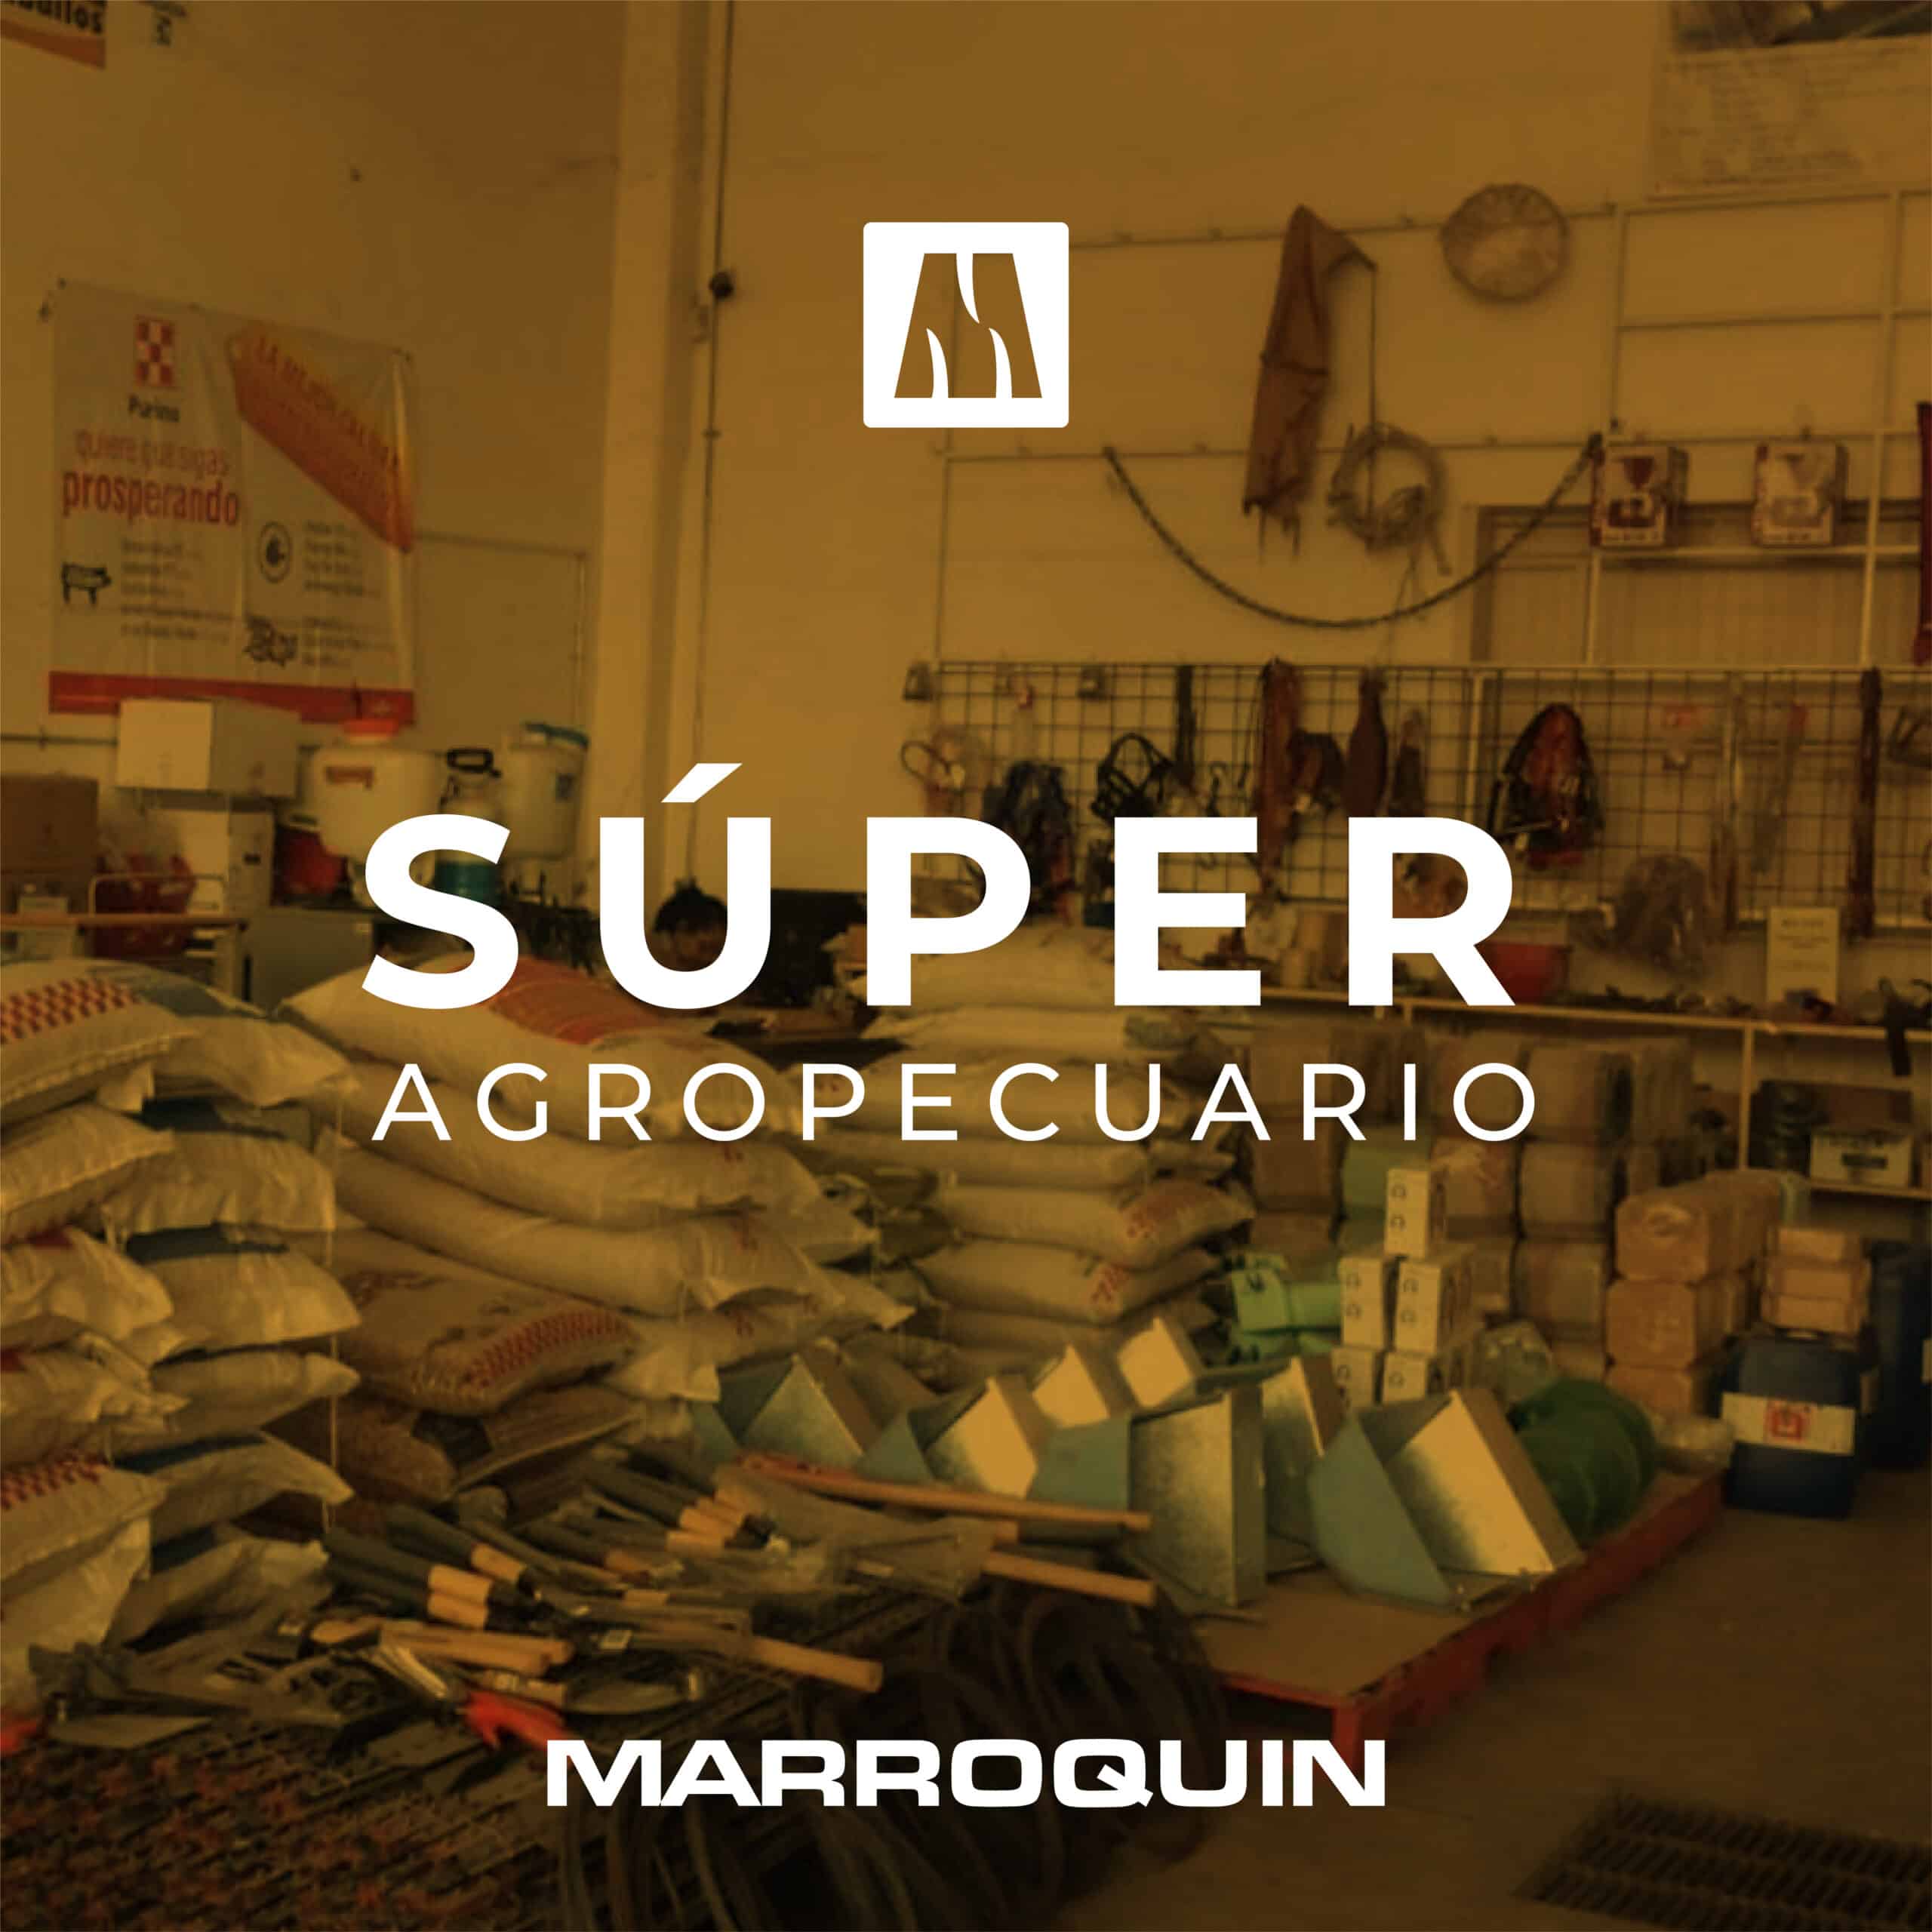 superagropecuario-marroquin-wp